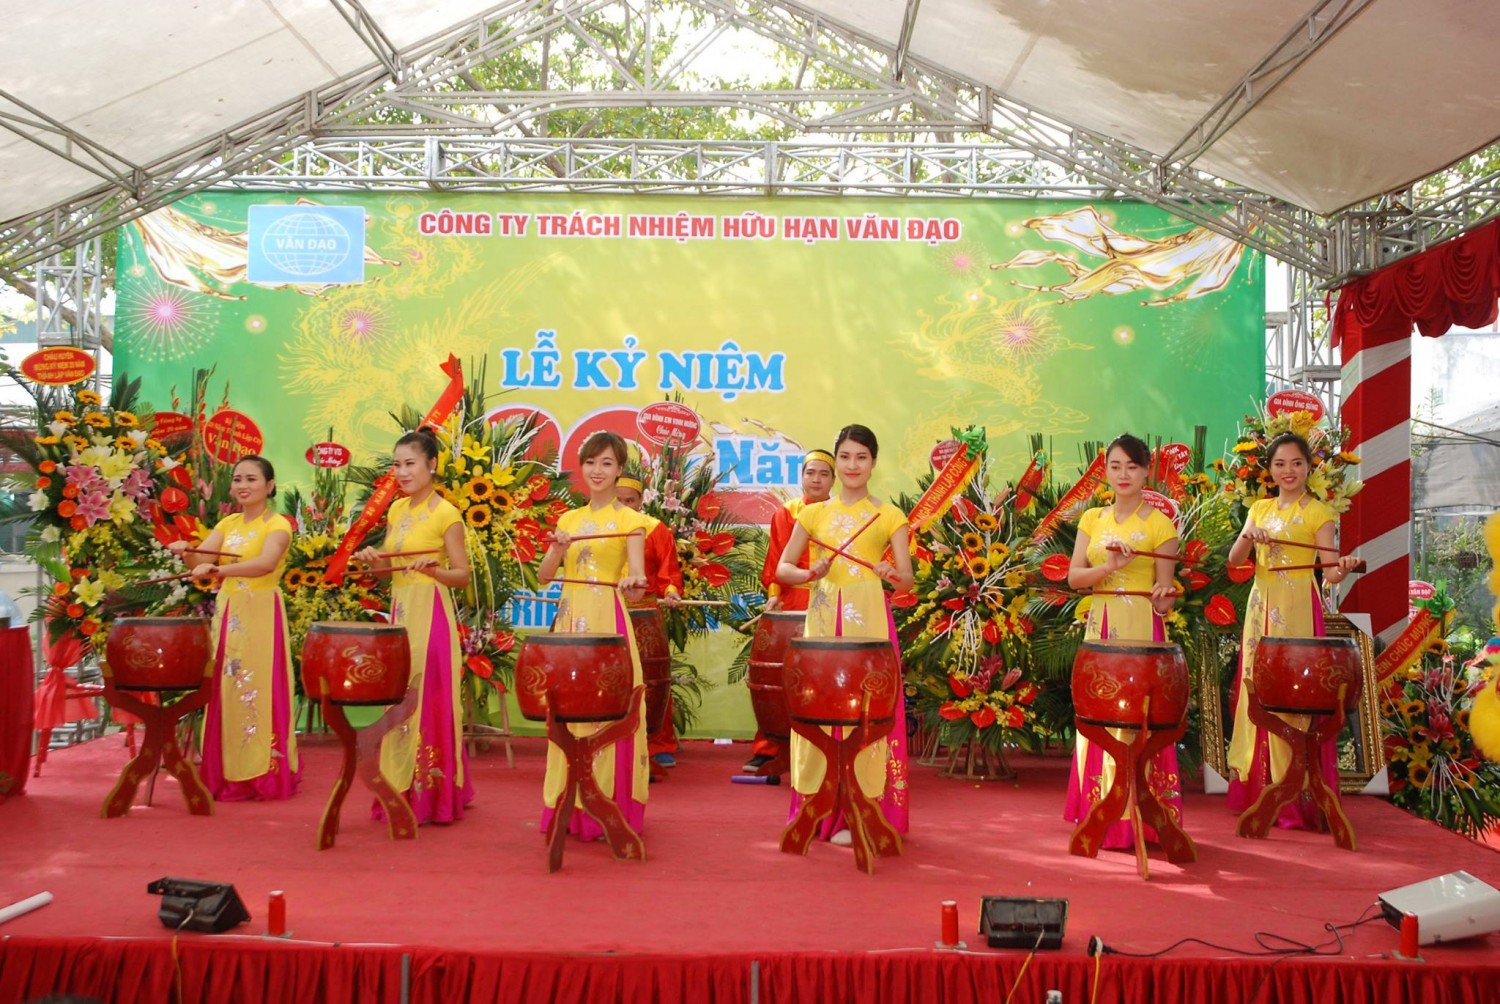 Thuê trống hội, thuê Mc, thuê dàn nhạc dân tộc Hội chợ Thương mại Quốc tế Việt Nam Xpro 2015